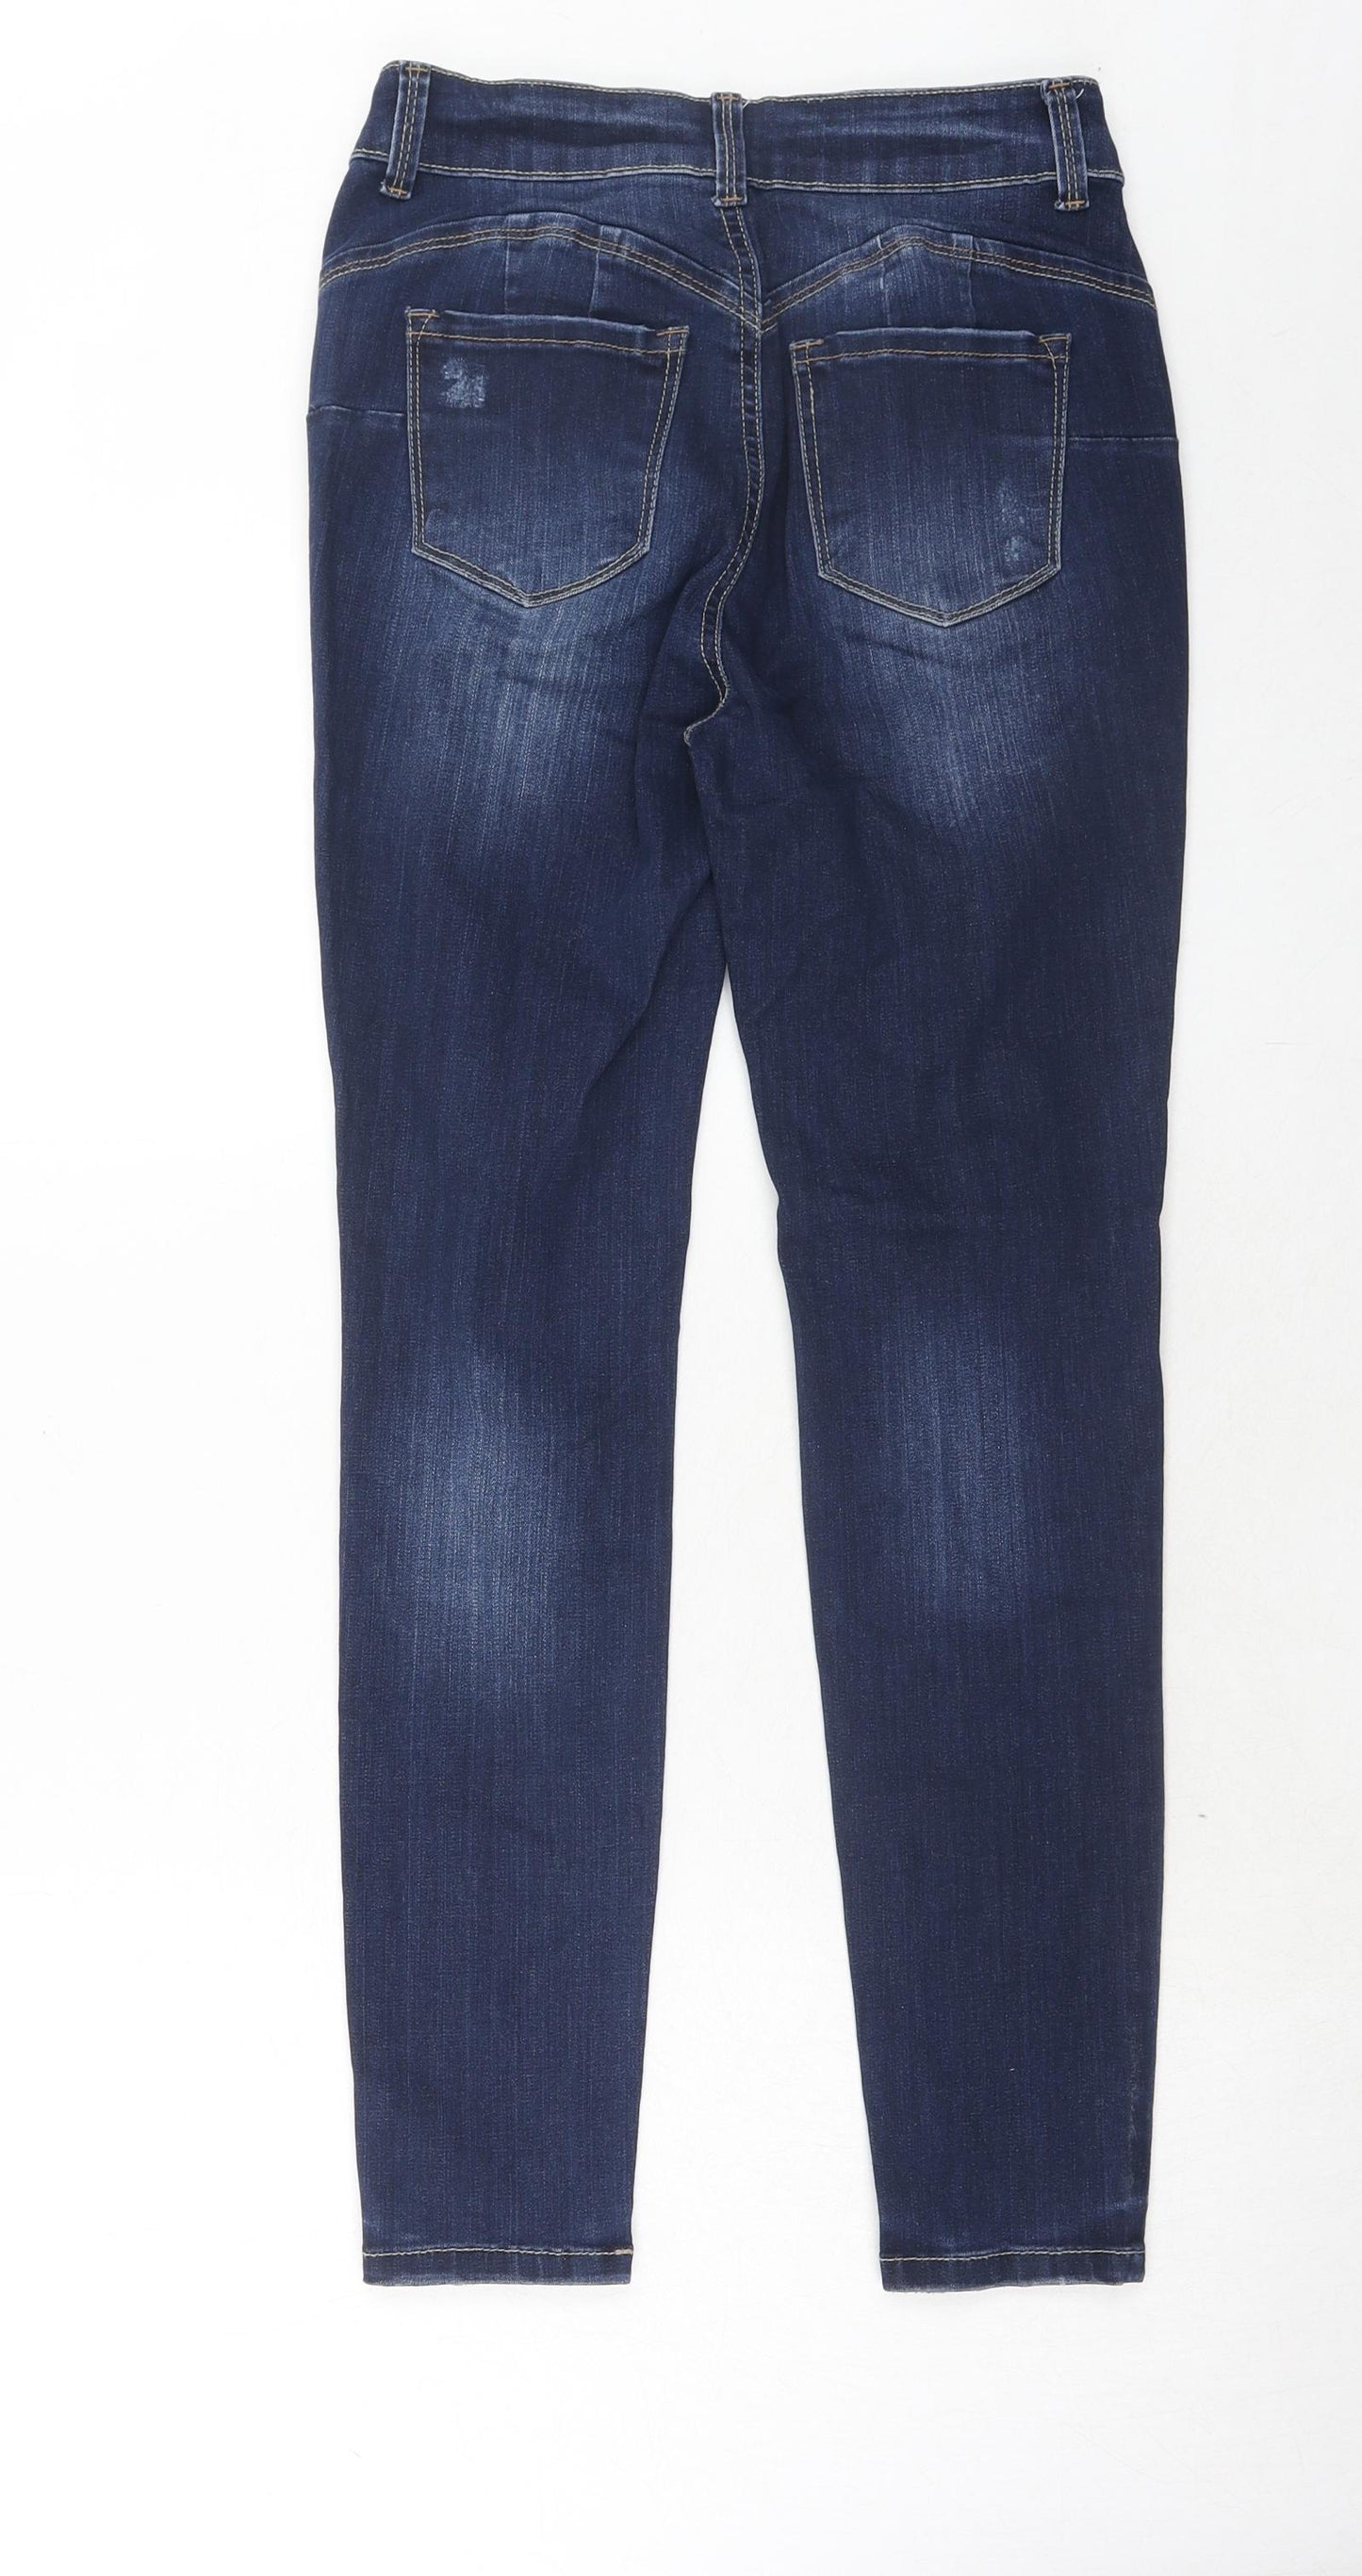 WAX JEAN Womens Blue Cotton Skinny Jeans Size 28 in Regular Zip